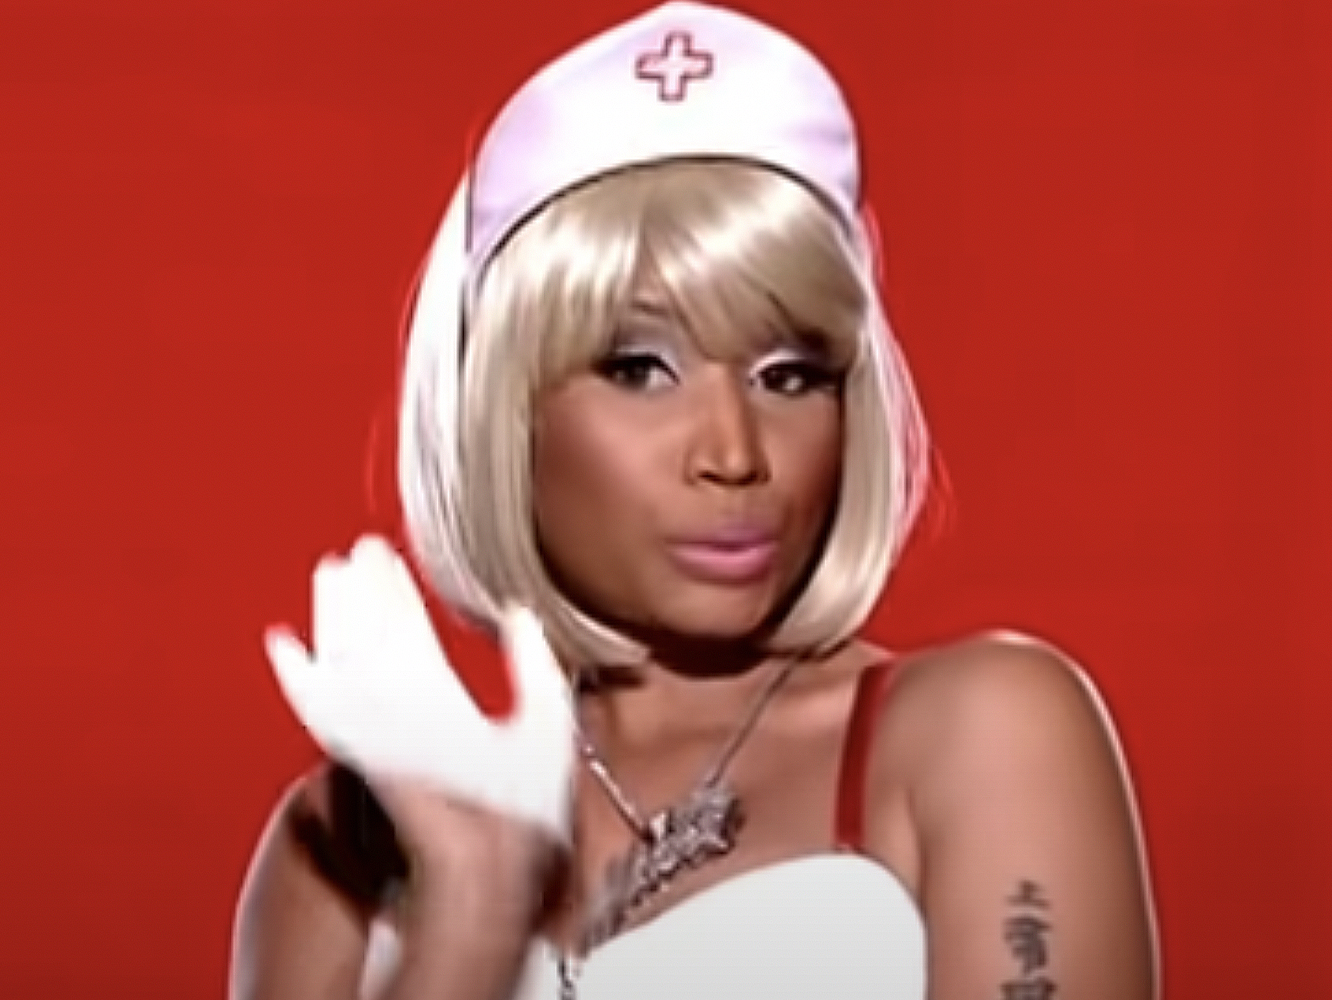  El Gobierno de Trinidad & Tobago desmiente a Nicki Minaj, a la que también bloquean el Twitter